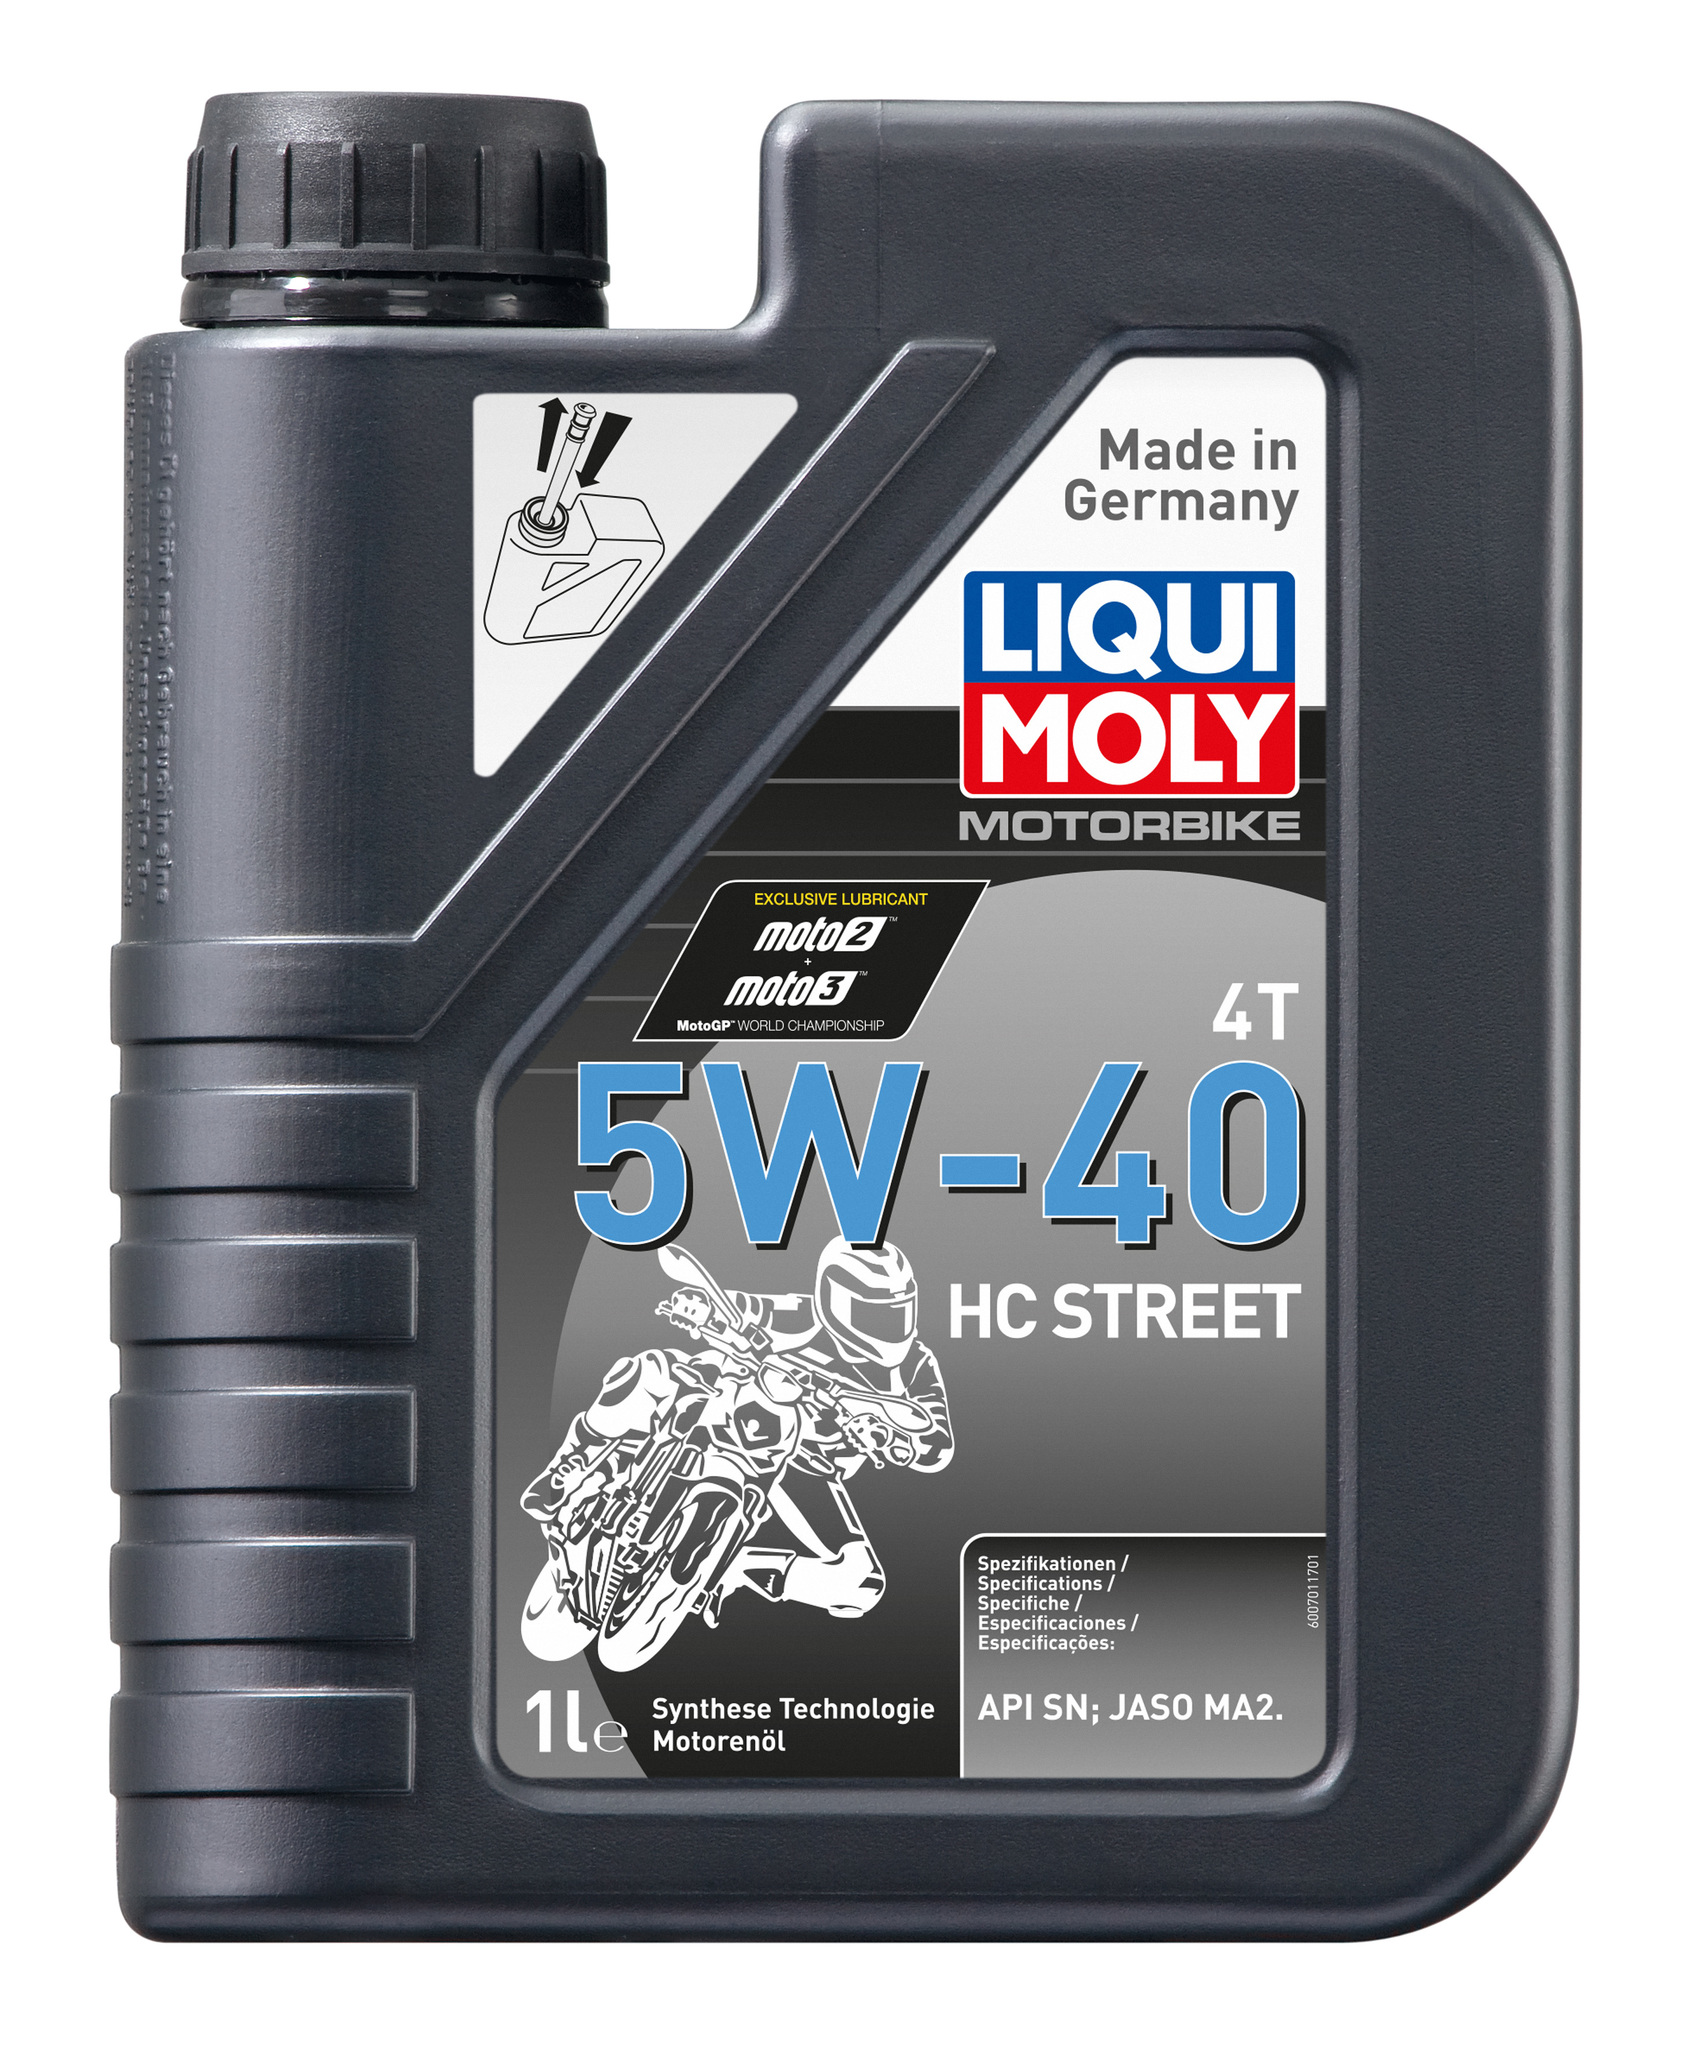 Моторное масло Liqui Moly Motorbike 4T HC Street 5W40 hc-синтетическое 4л